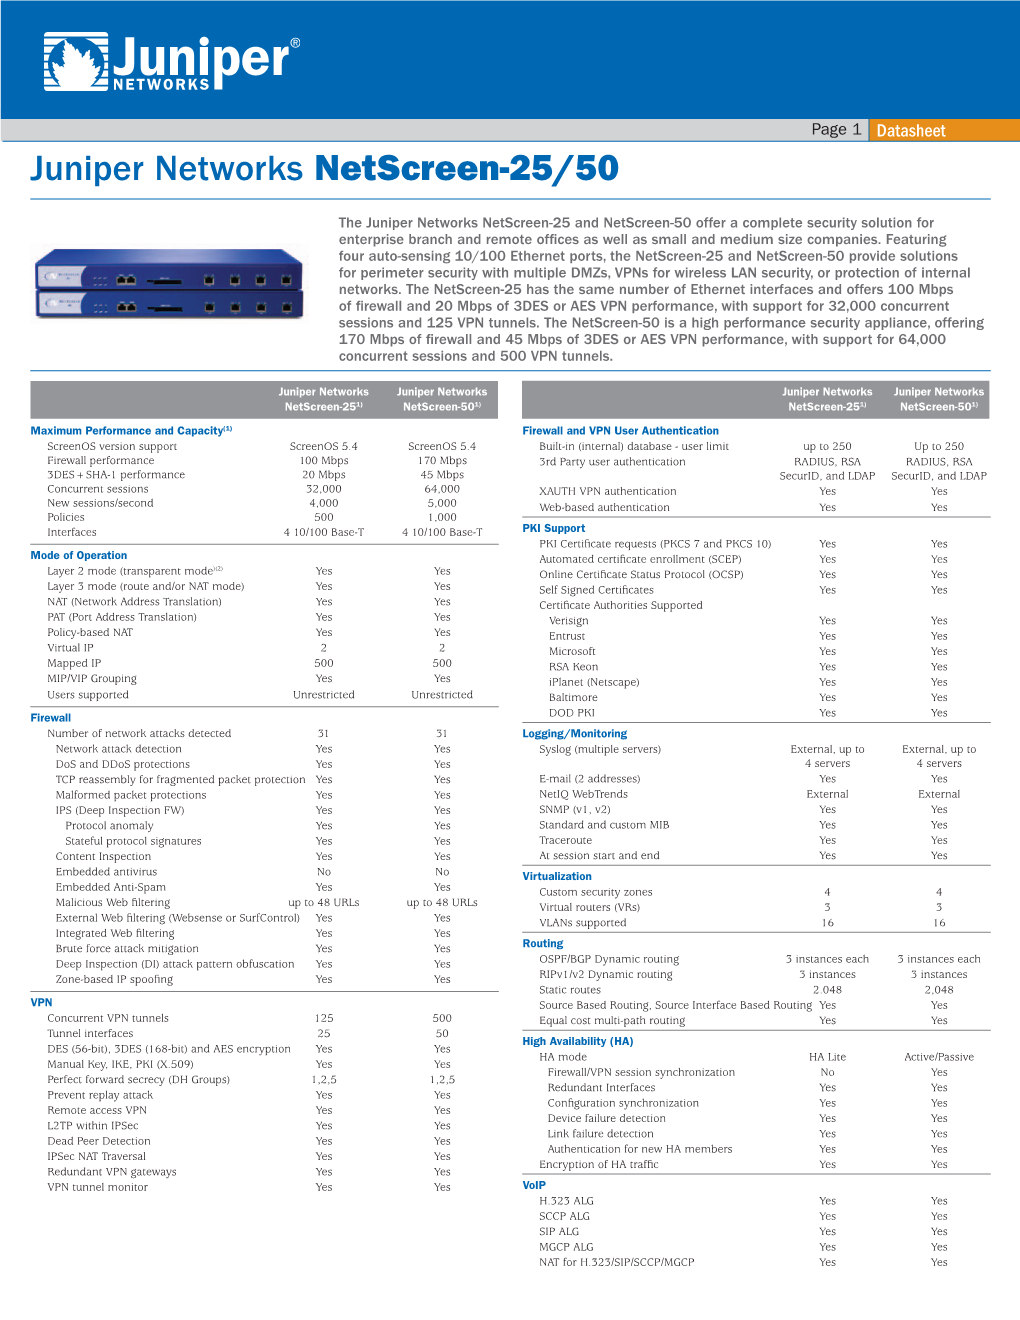 Juniper Networks Netscreen-25/50 Datasheet